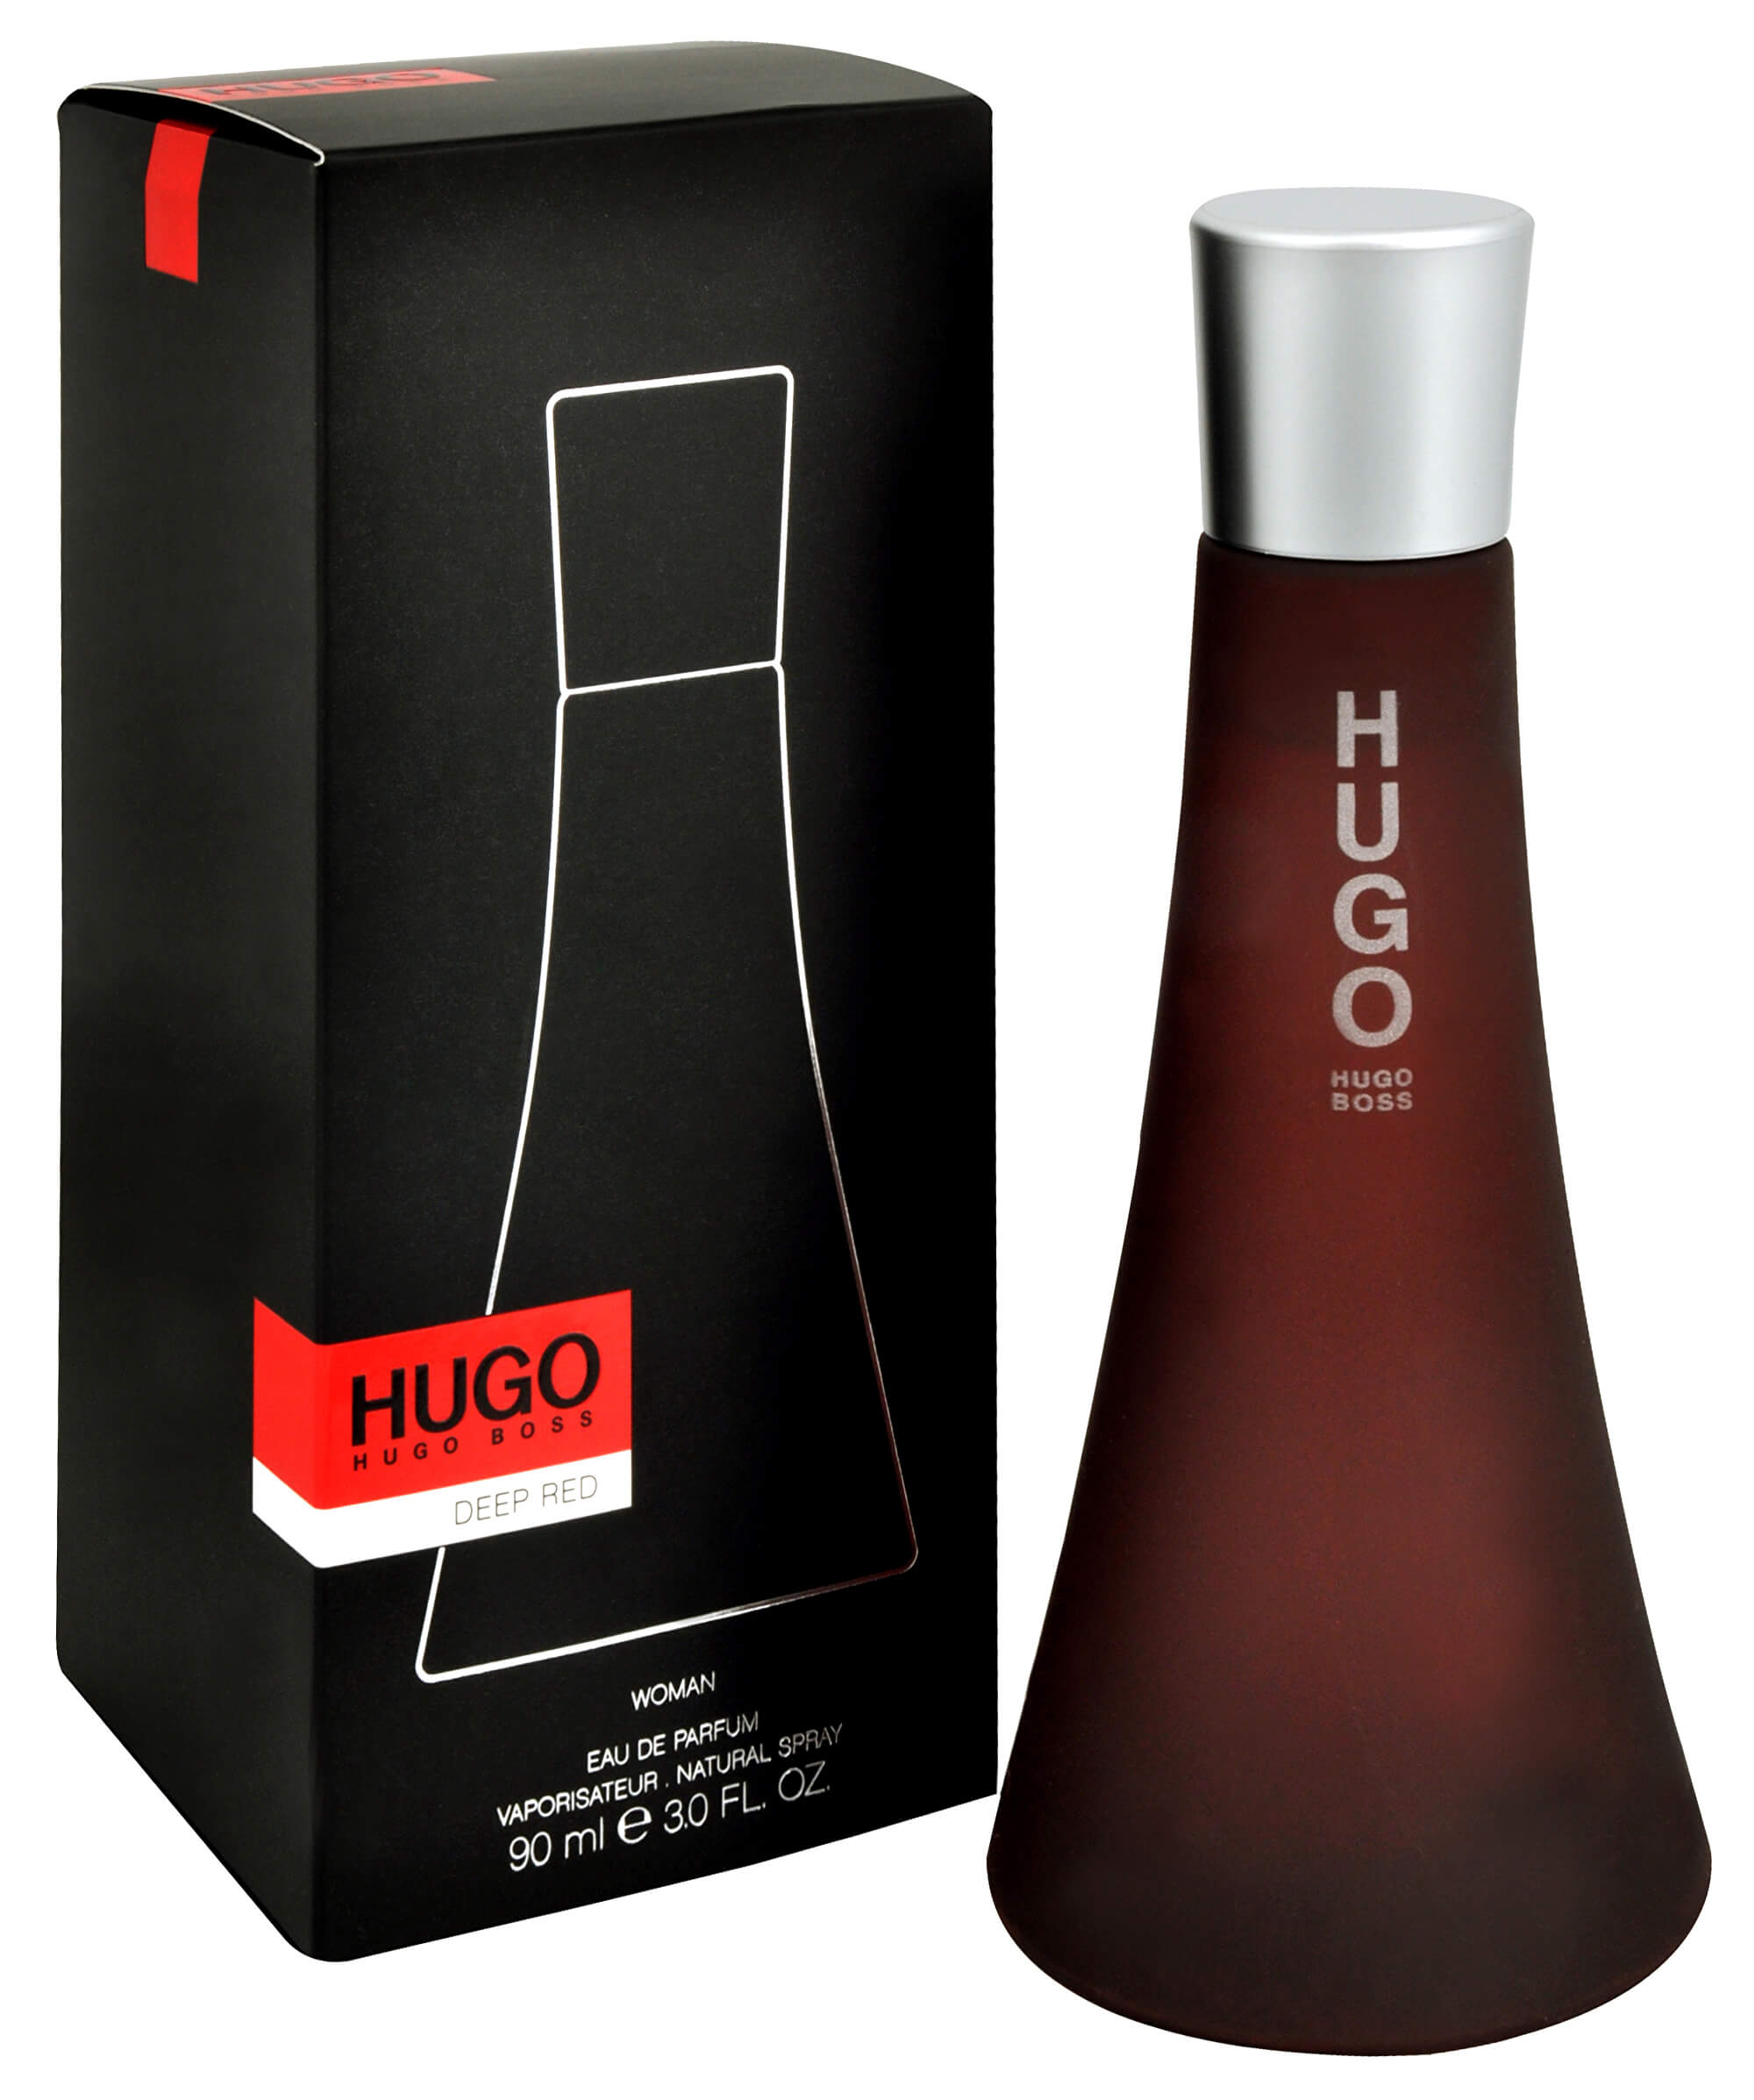 Hugo для женщин. Хьюго босс дип ред. Хуго босс дип ред женские. Туалетная вода Hugo Boss Deep Red. Deep Red Eau de Parfum Hugo Boss.